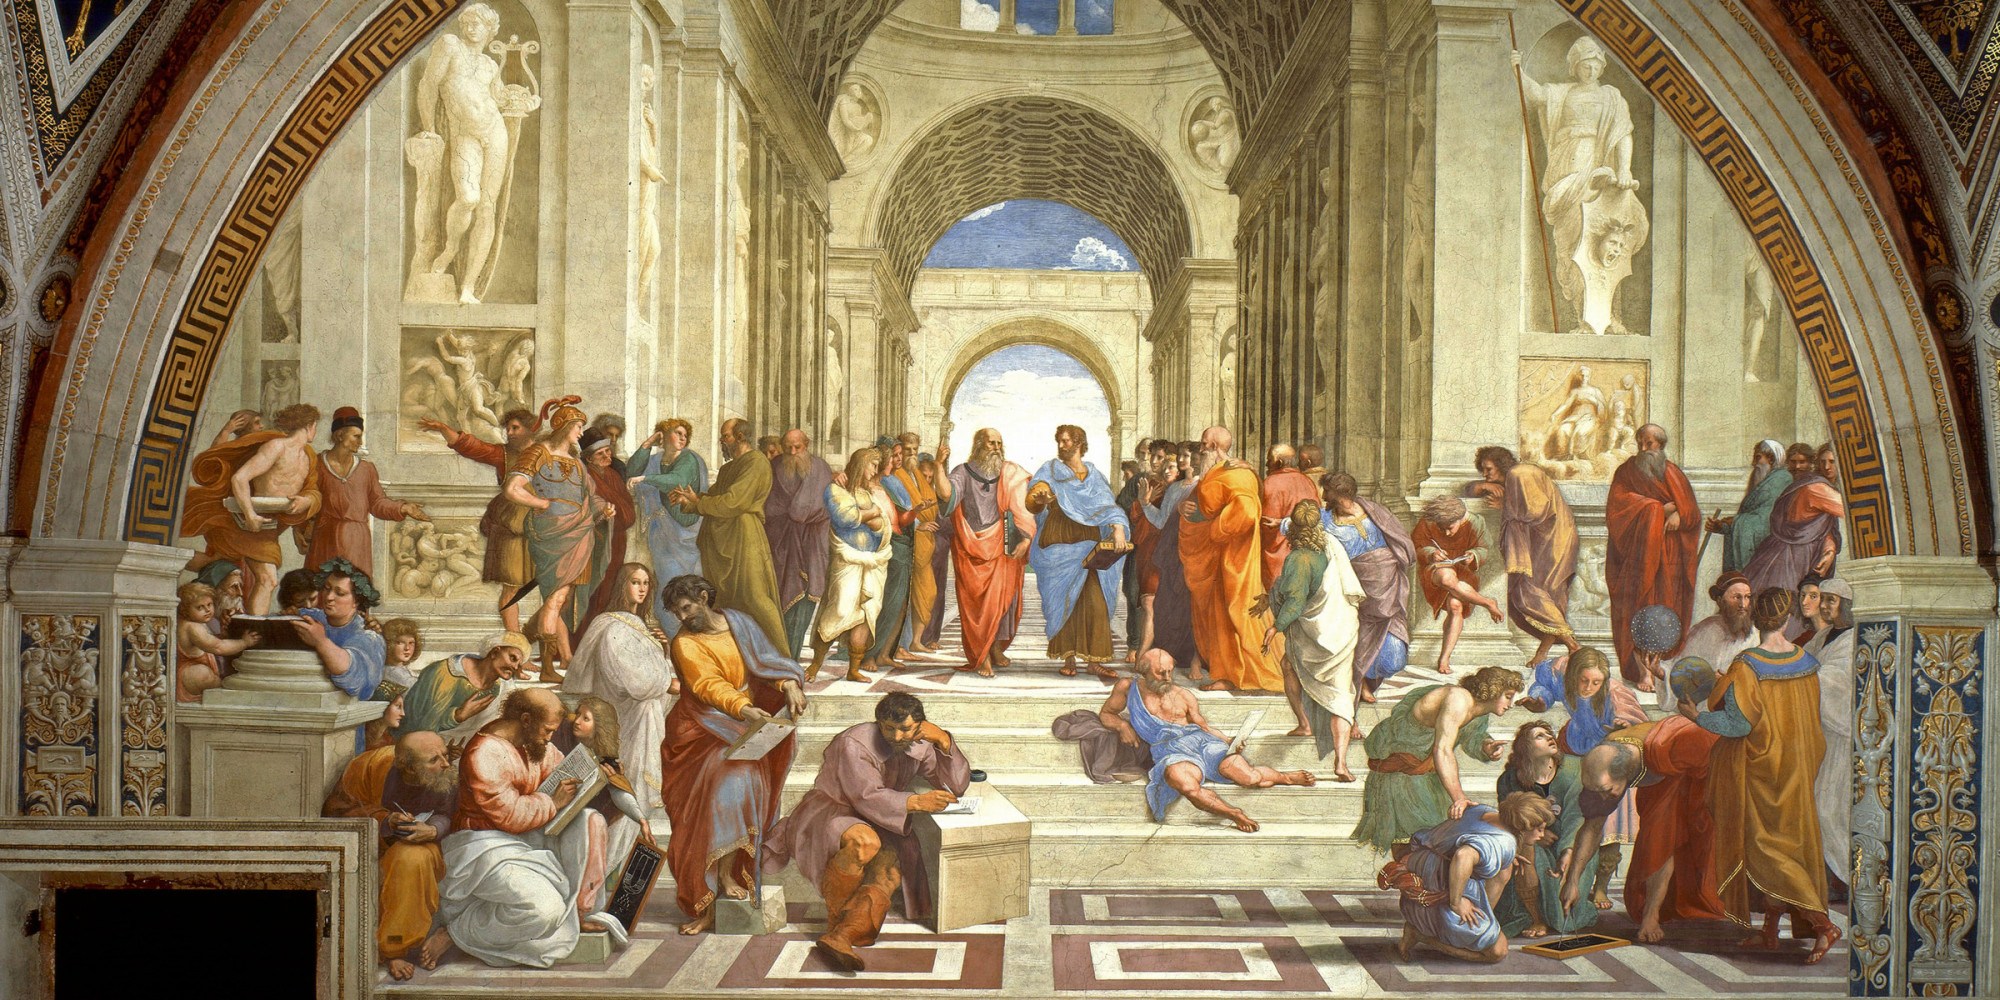 Plato's academy